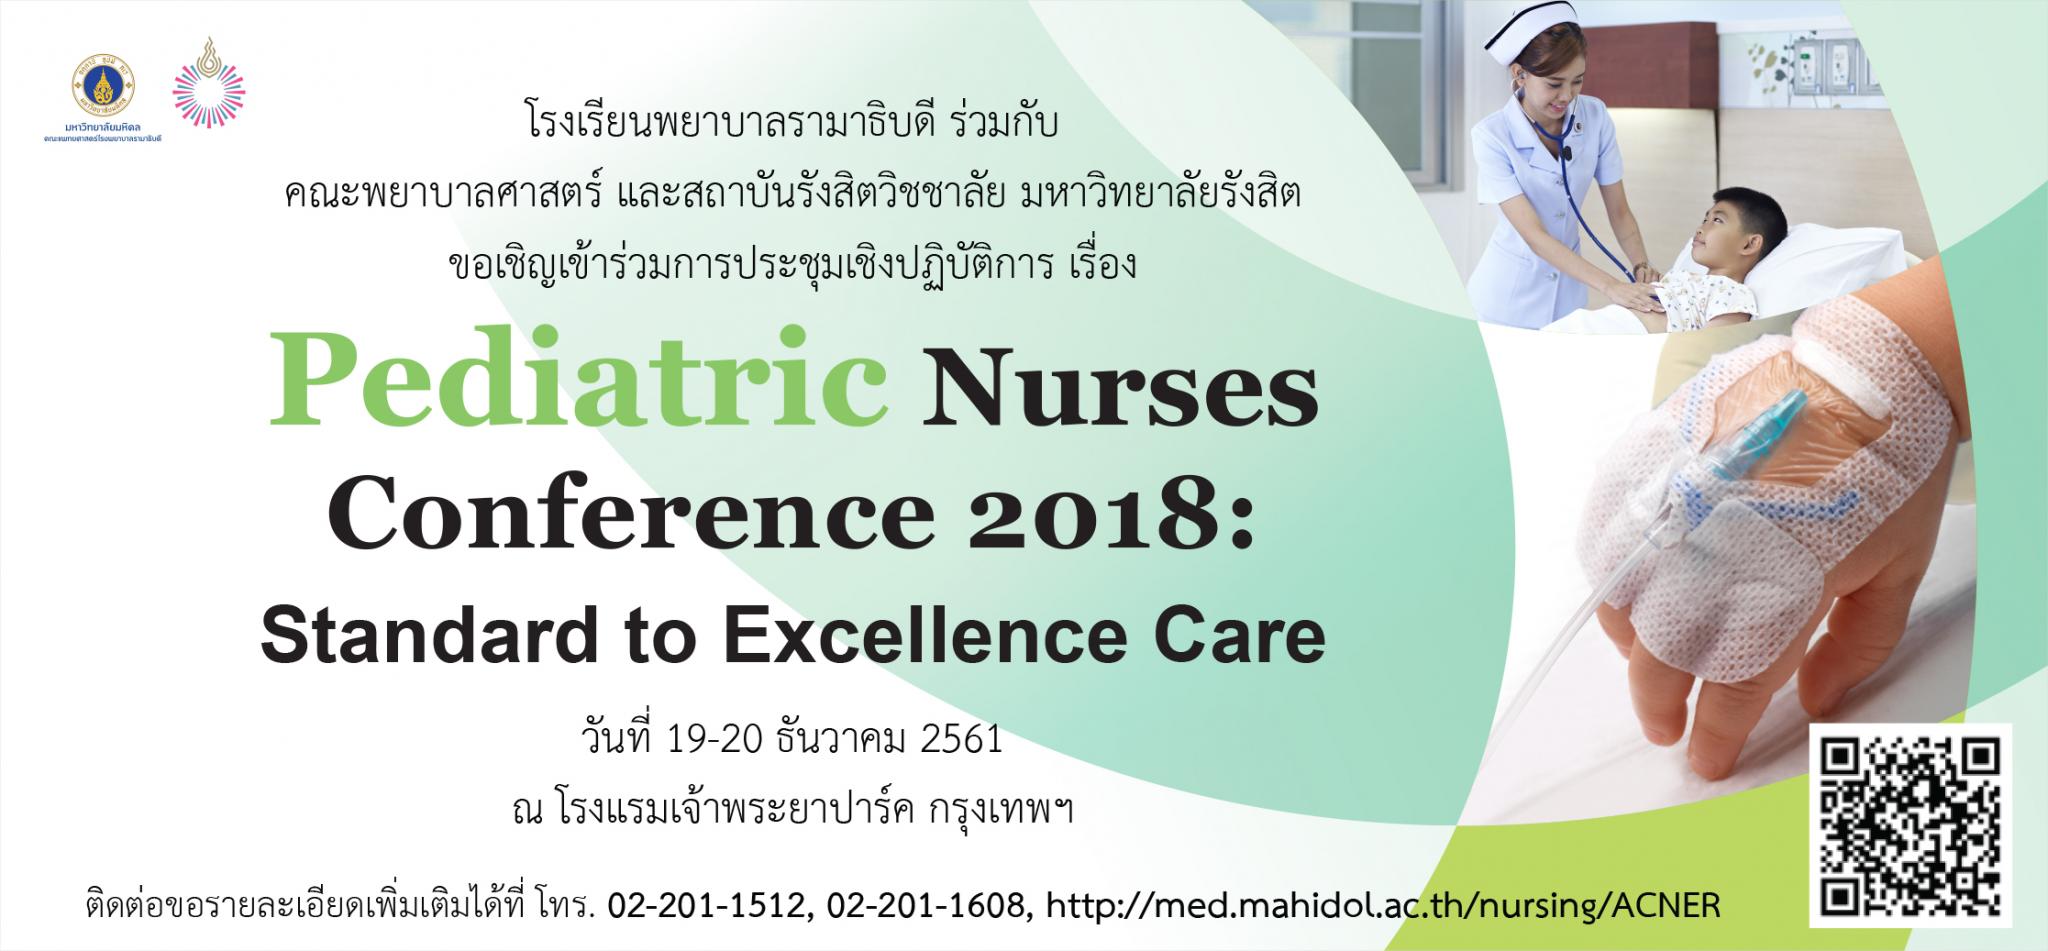 ขอเชิญเข้าร่วมการประชุมเชิงปฏิบัติการ เรื่อง Pediatric Nurses Conference 2018: Standard to Excellence Care